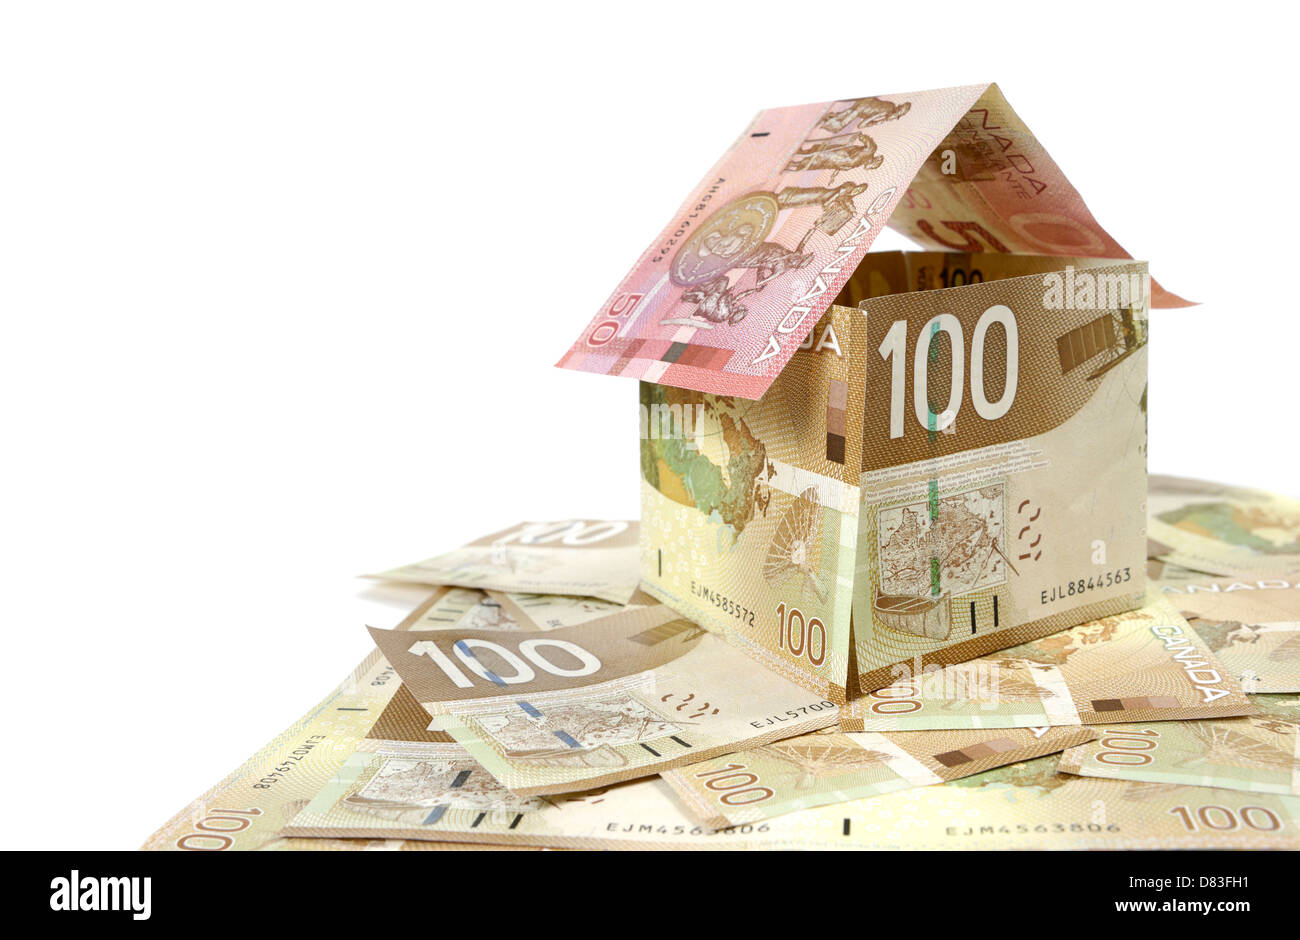 Modell eines Hauses hergestellt aus kanadischer Dollar Rechnungen Closeup Hypothek als Finanzinvestition gehaltenen Immobilien Versicherung Grundsteuer Banking-Konzept Stockfoto